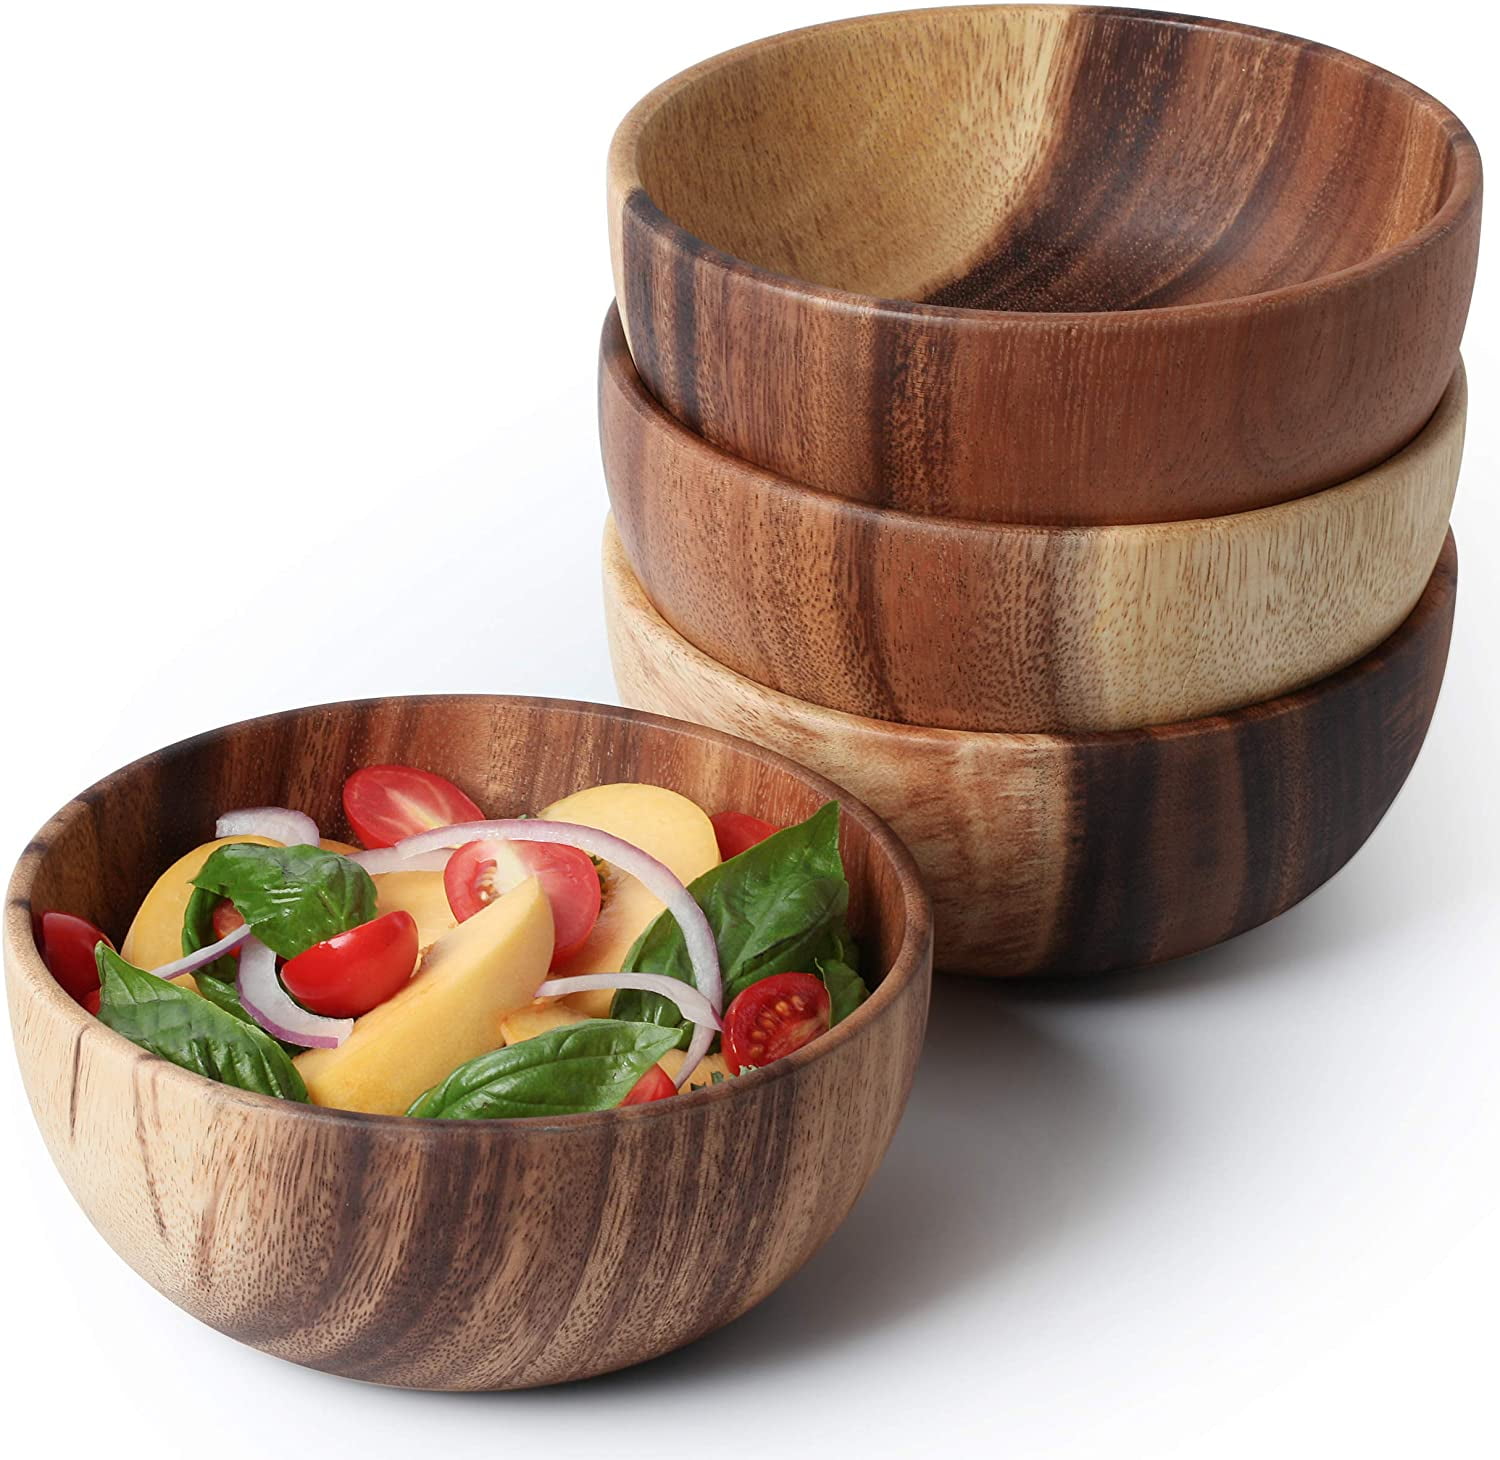 Fruit Salad Nuts Serving Bowls Dish Kitchen Dinning Room Wooden Bowl 22 cm 